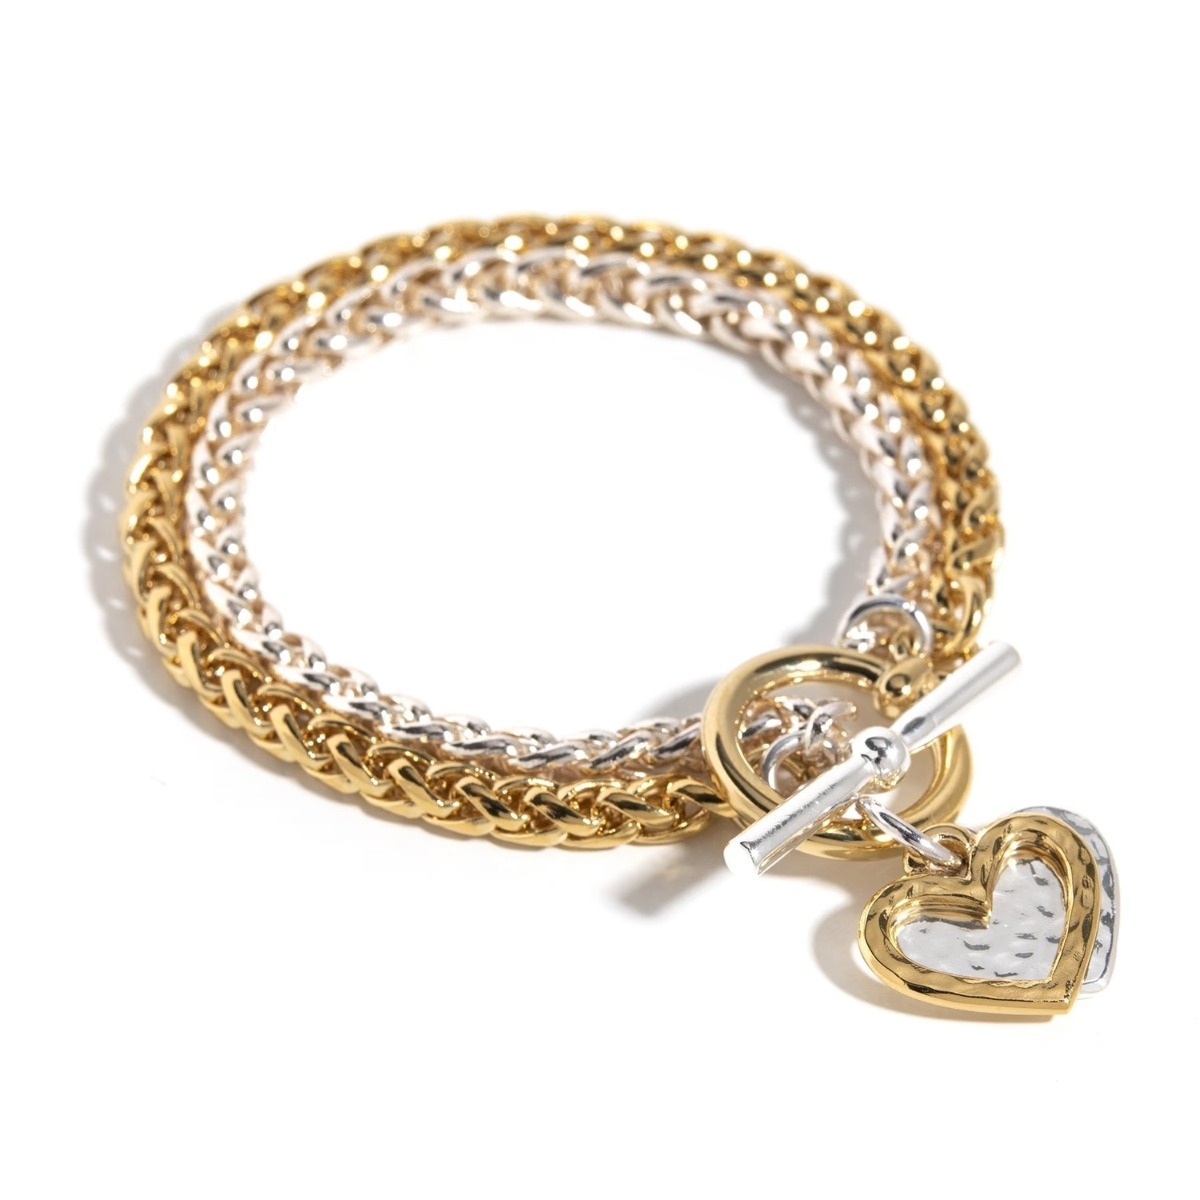 Danon Jewelry Double Heart Chain Bracelet - 1